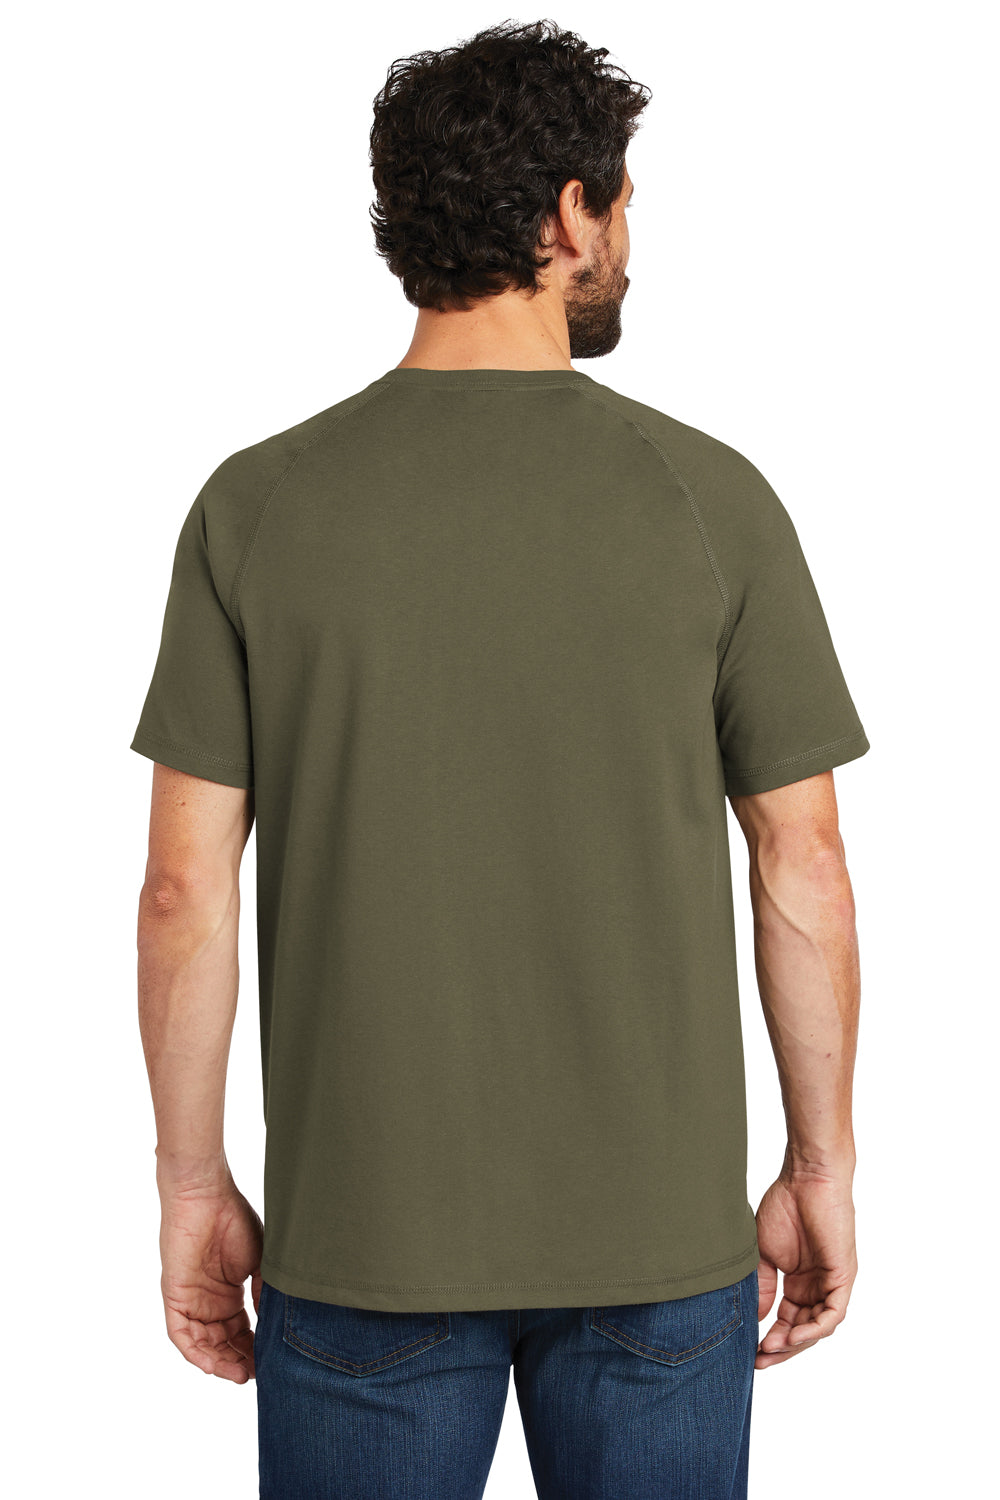 Carhartt CT100410 Mens Delmont Moisture Wicking Short Sleeve Crewneck T-Shirt w/ Pocket Moss Green Back